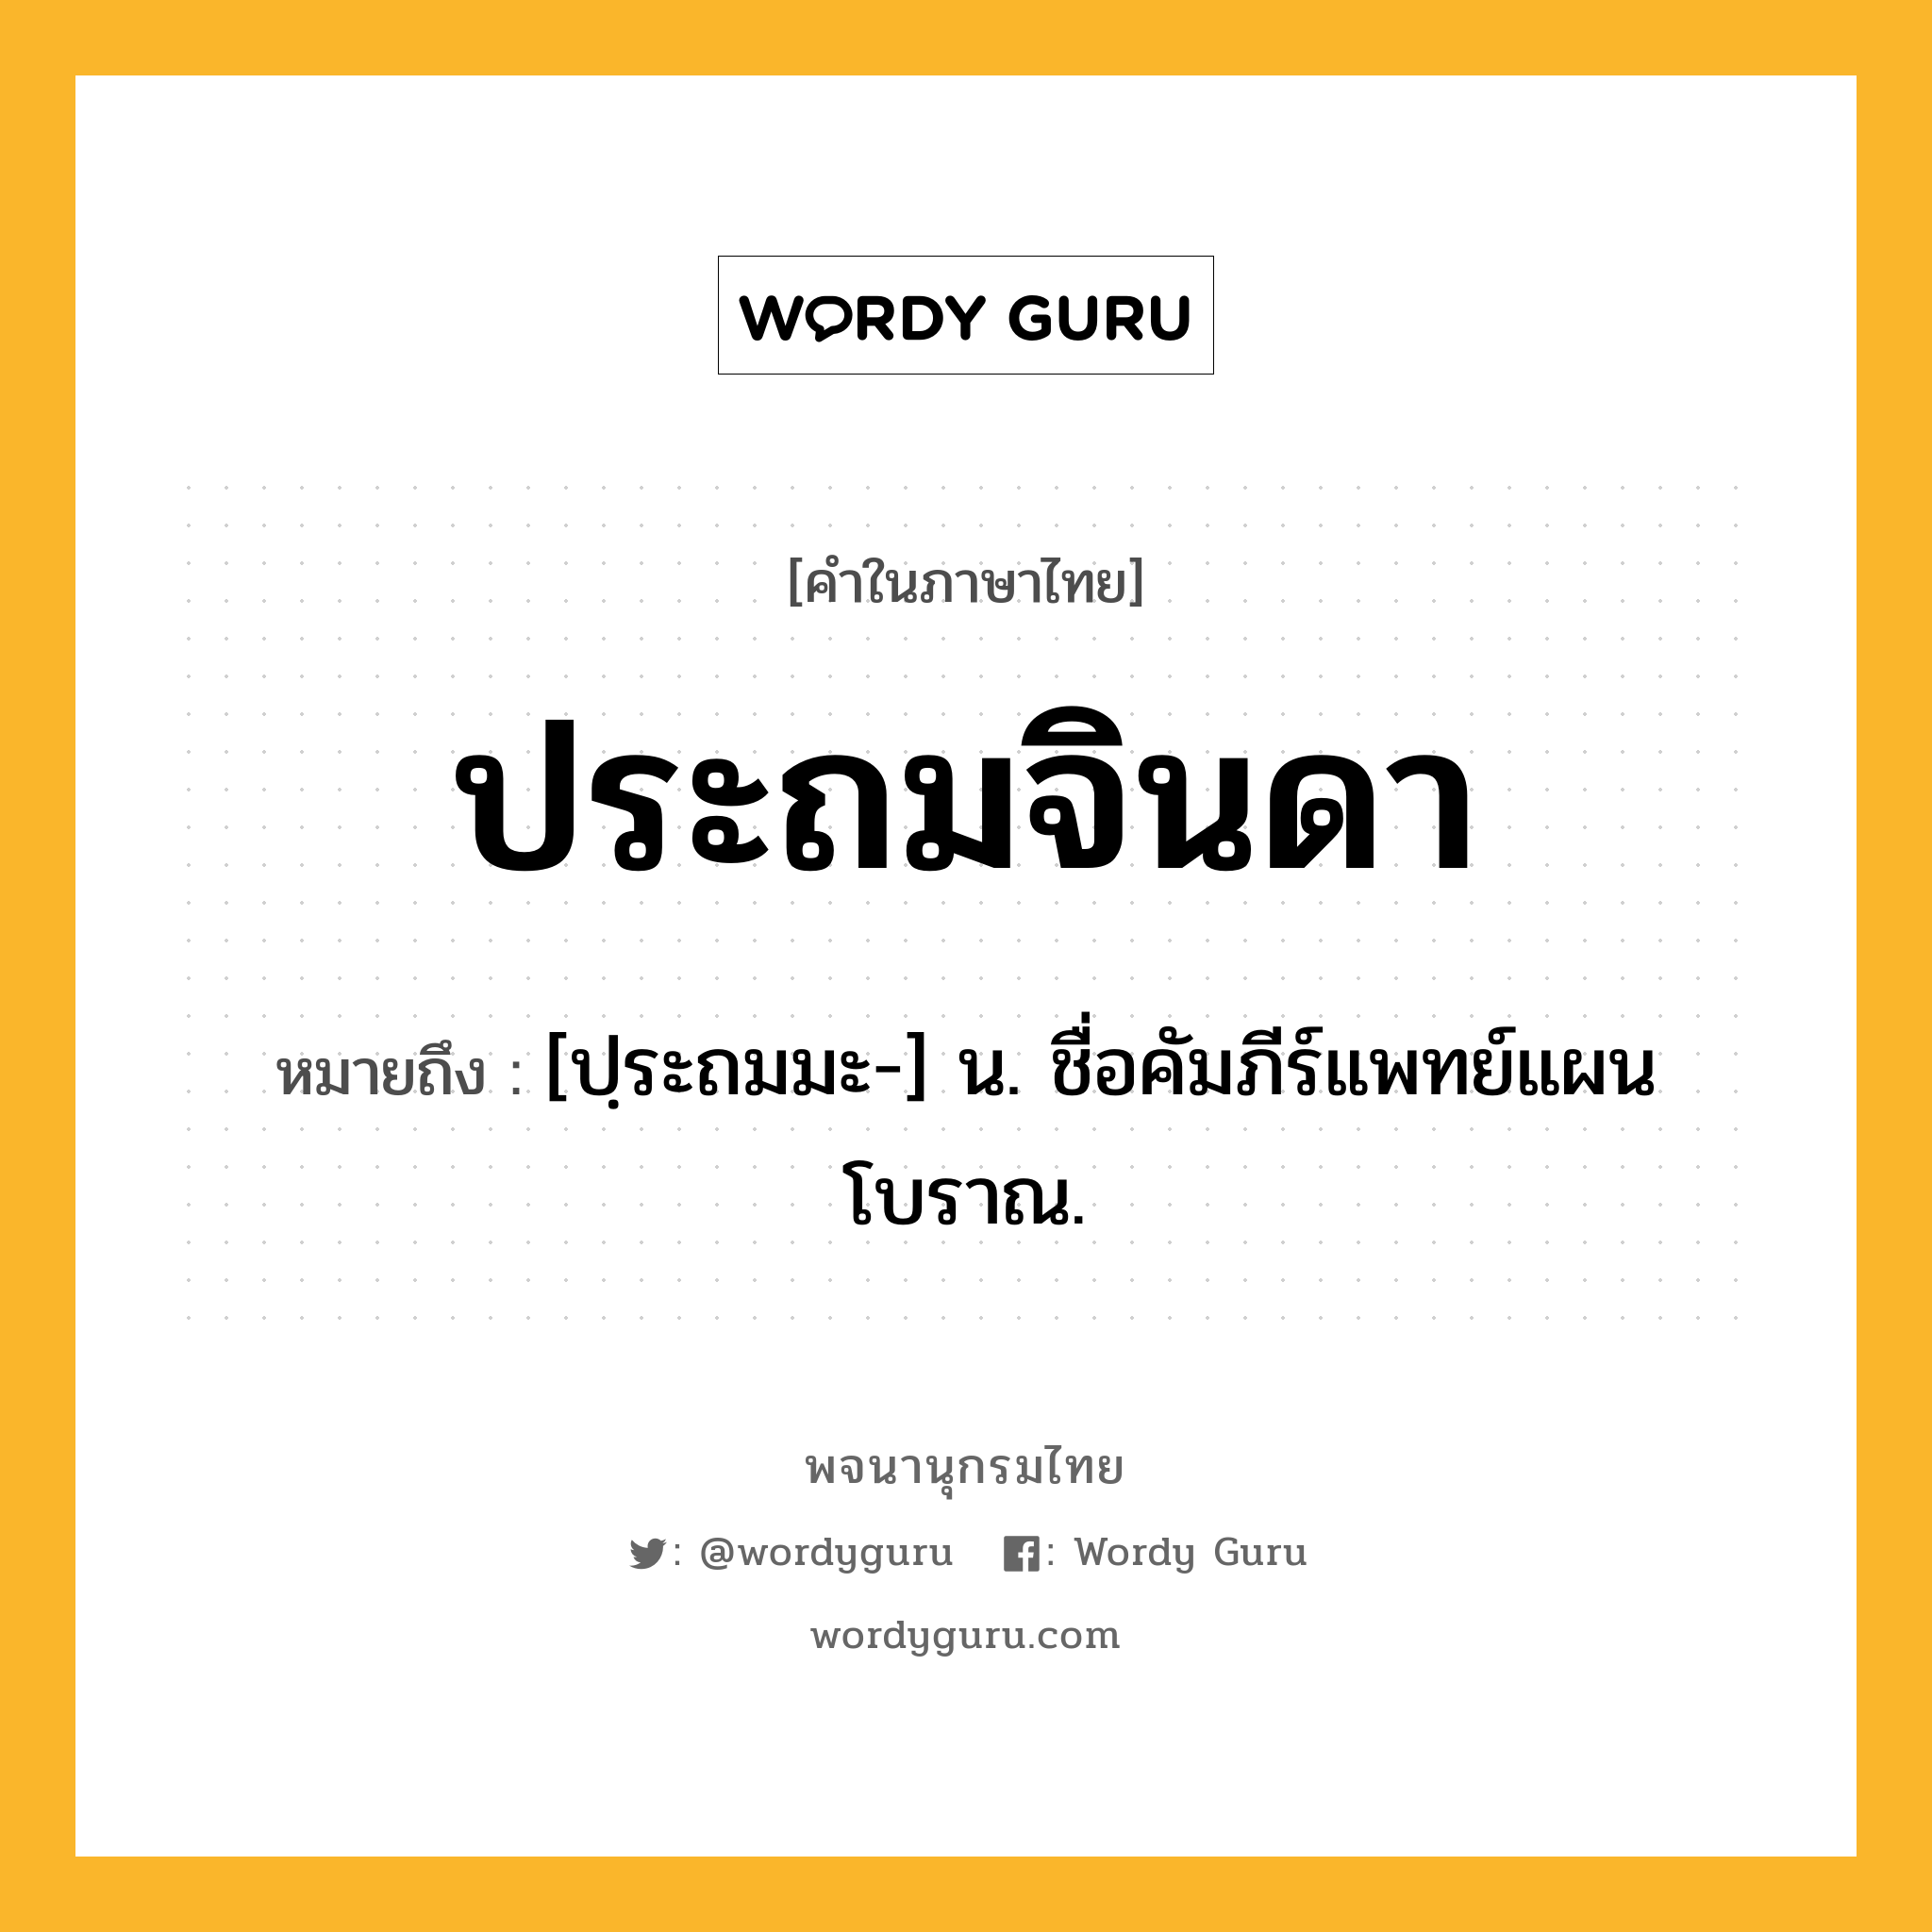 ประถมจินดา หมายถึงอะไร?, คำในภาษาไทย ประถมจินดา หมายถึง [ปฺระถมมะ-] น. ชื่อคัมภีร์แพทย์แผนโบราณ.